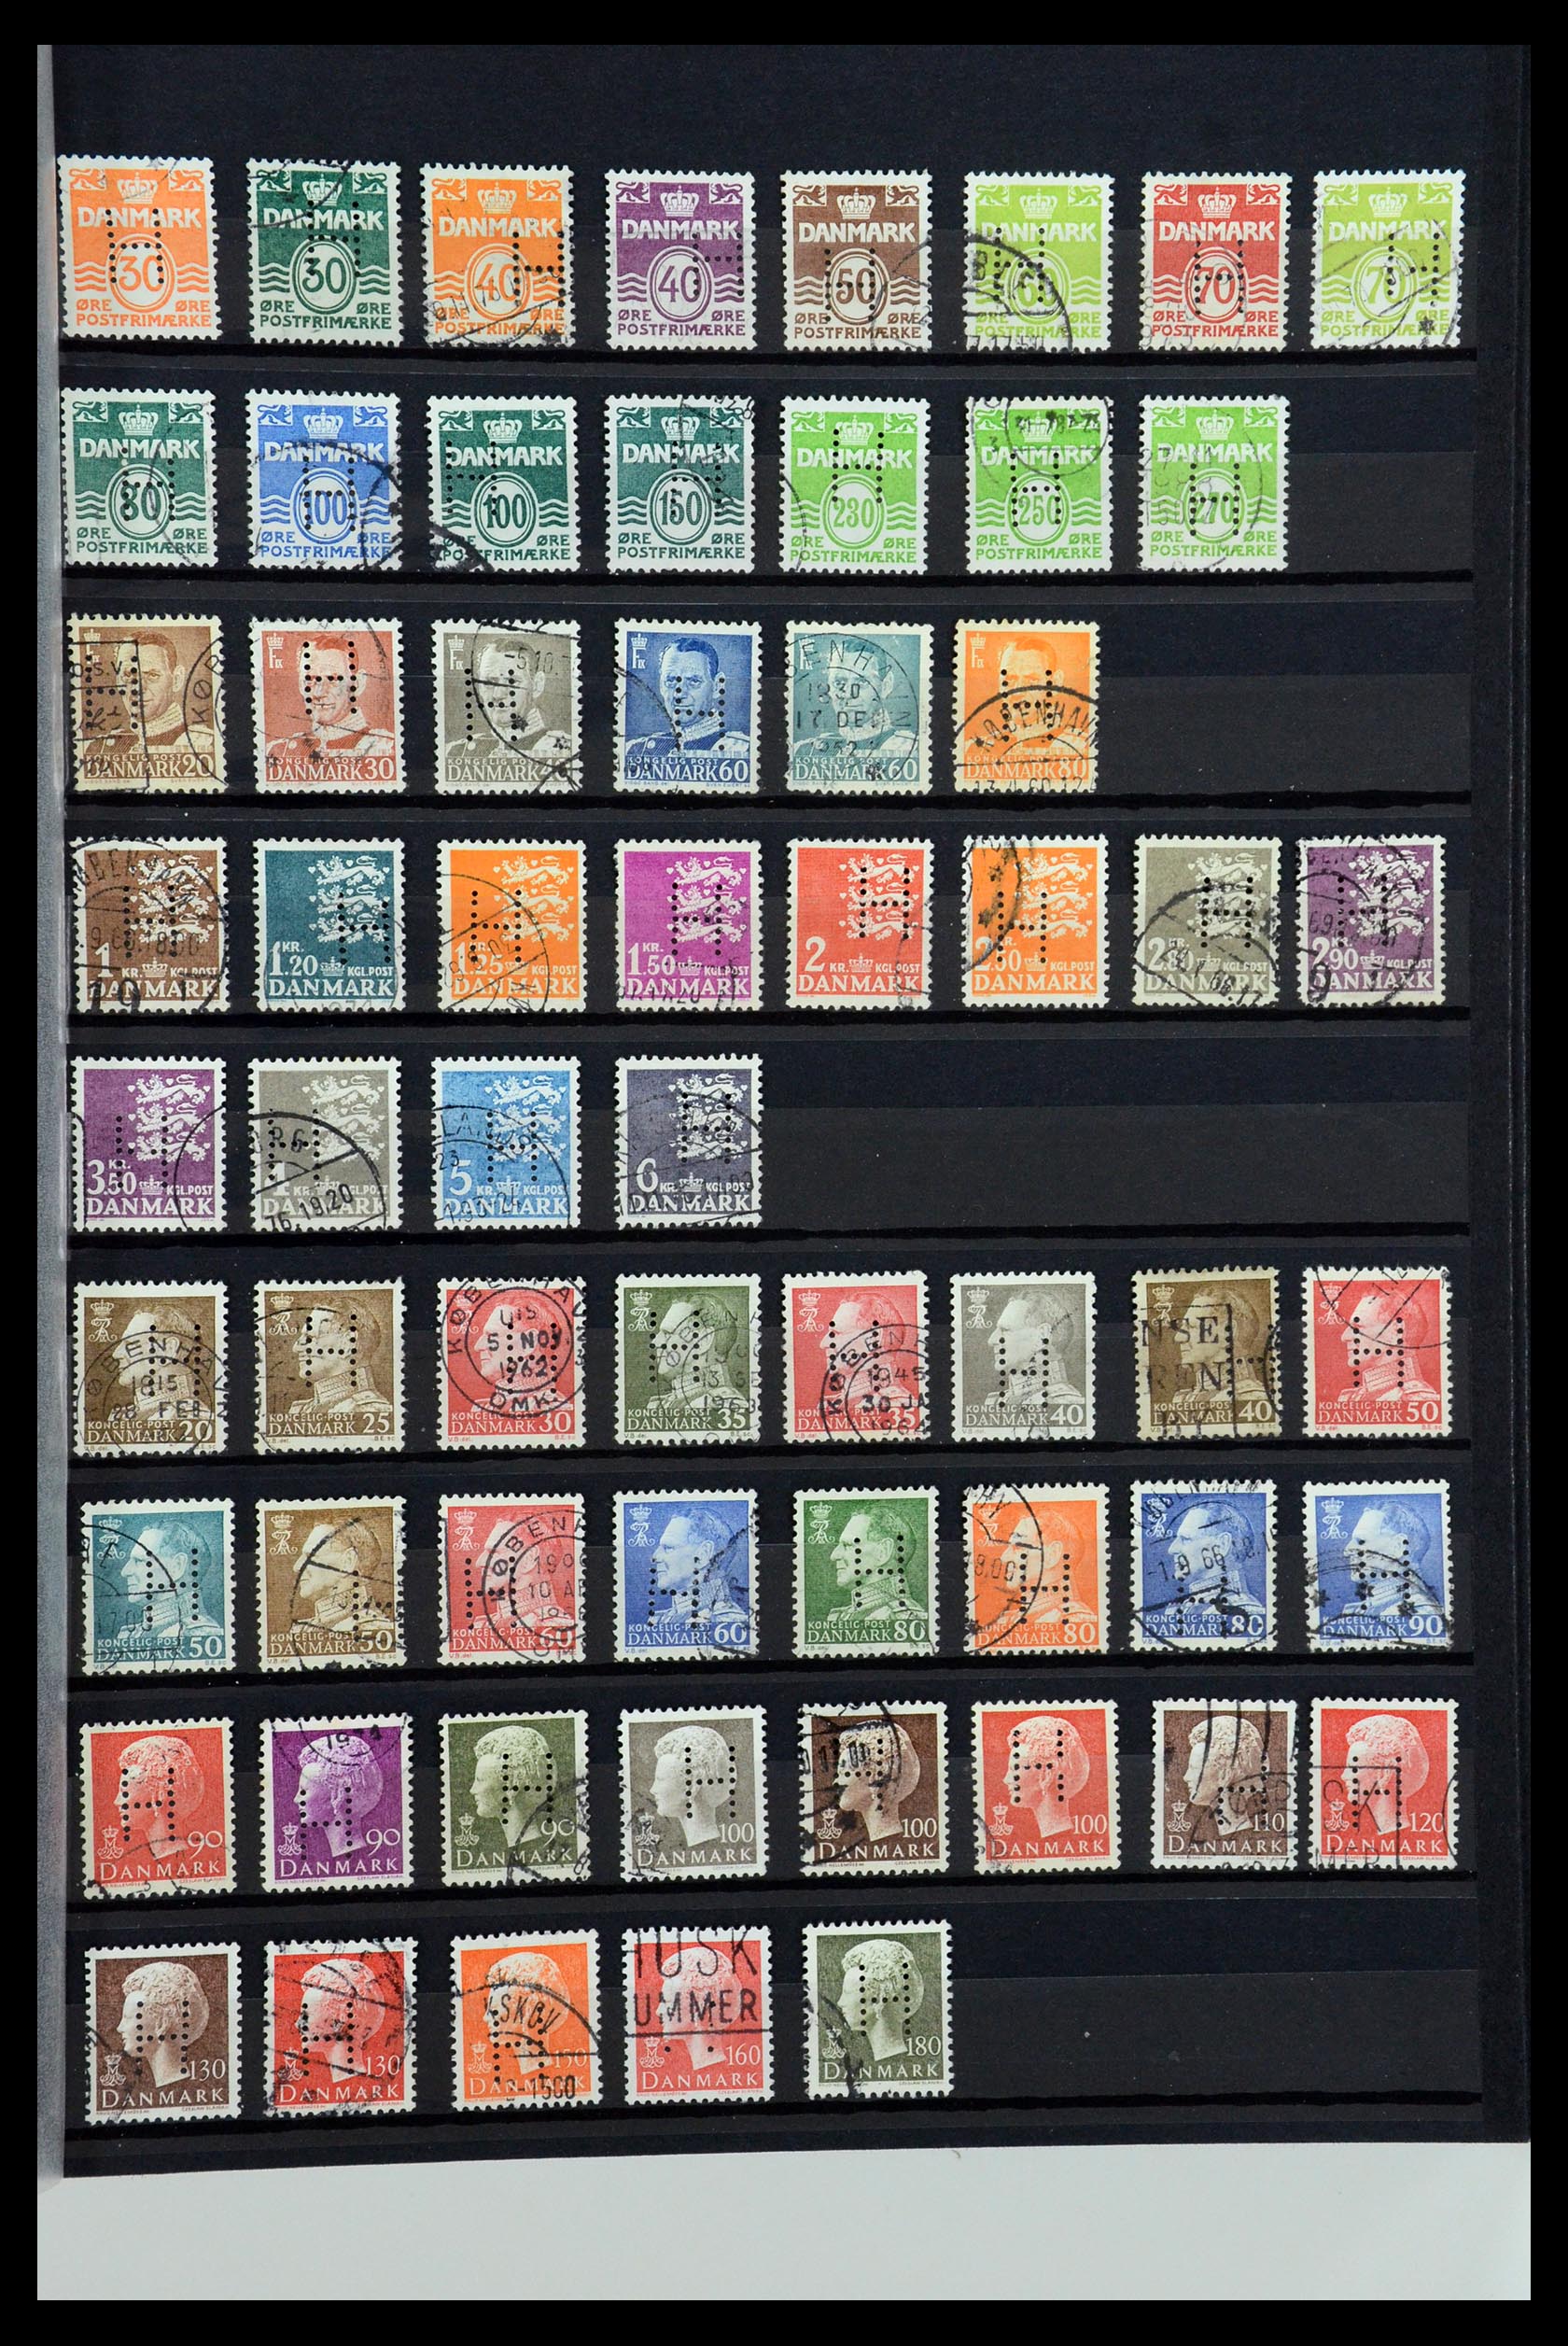 36396 122 - Postzegelverzameling 36396 Denemarken perfins.